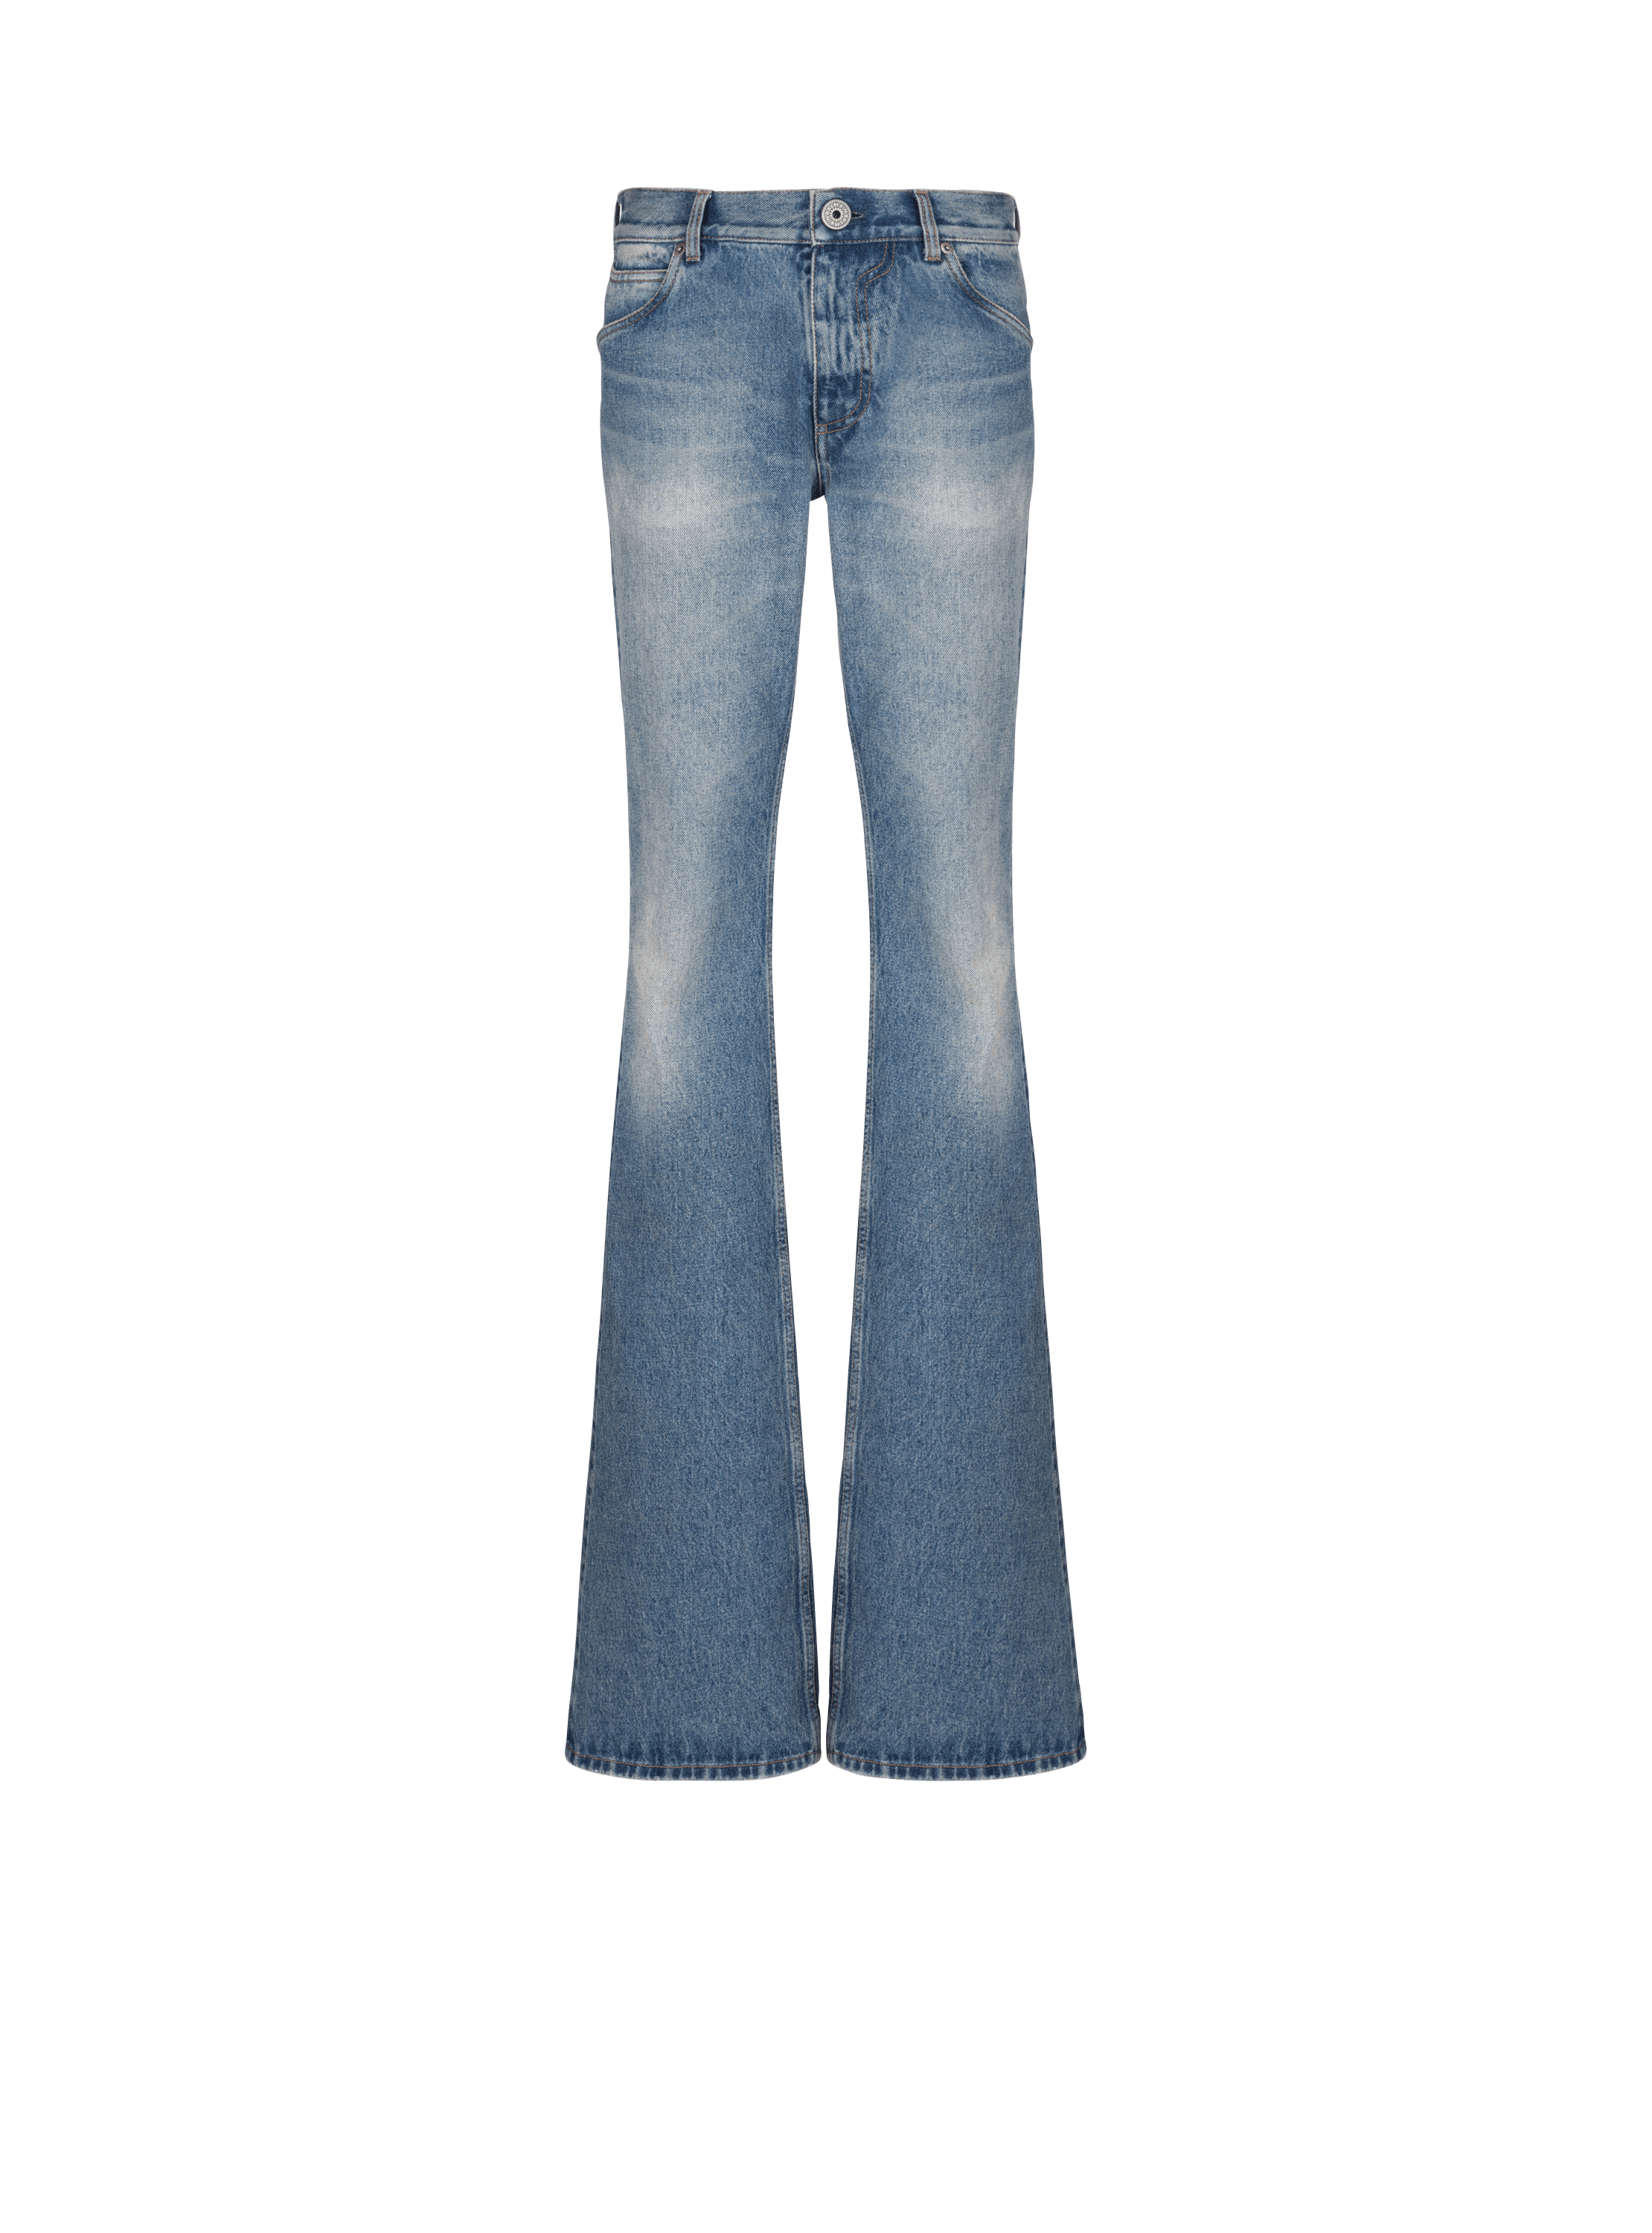 Blue Wash vintage denim jeans